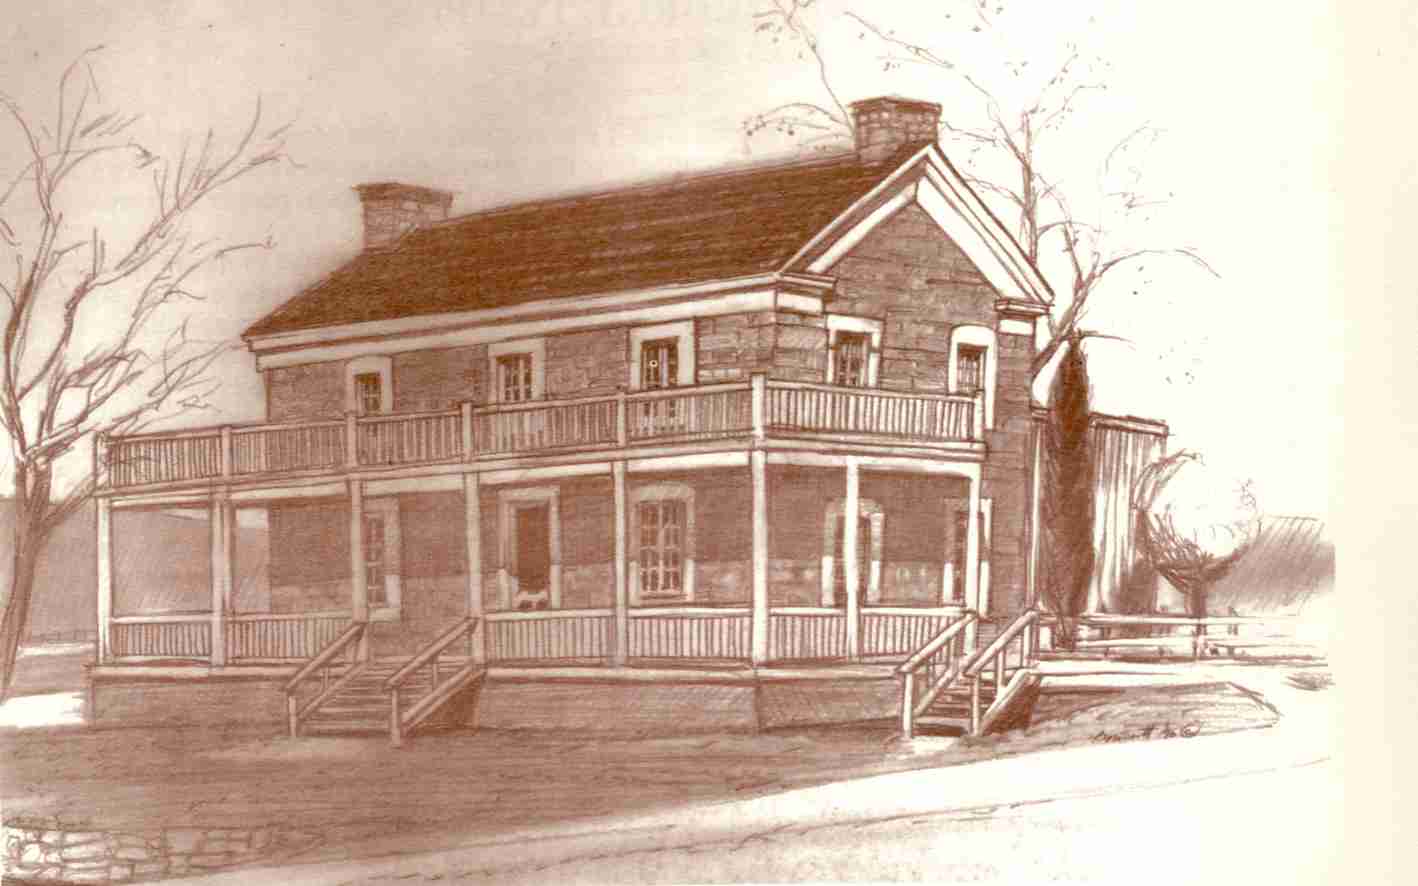 Sketch of the Covington Home